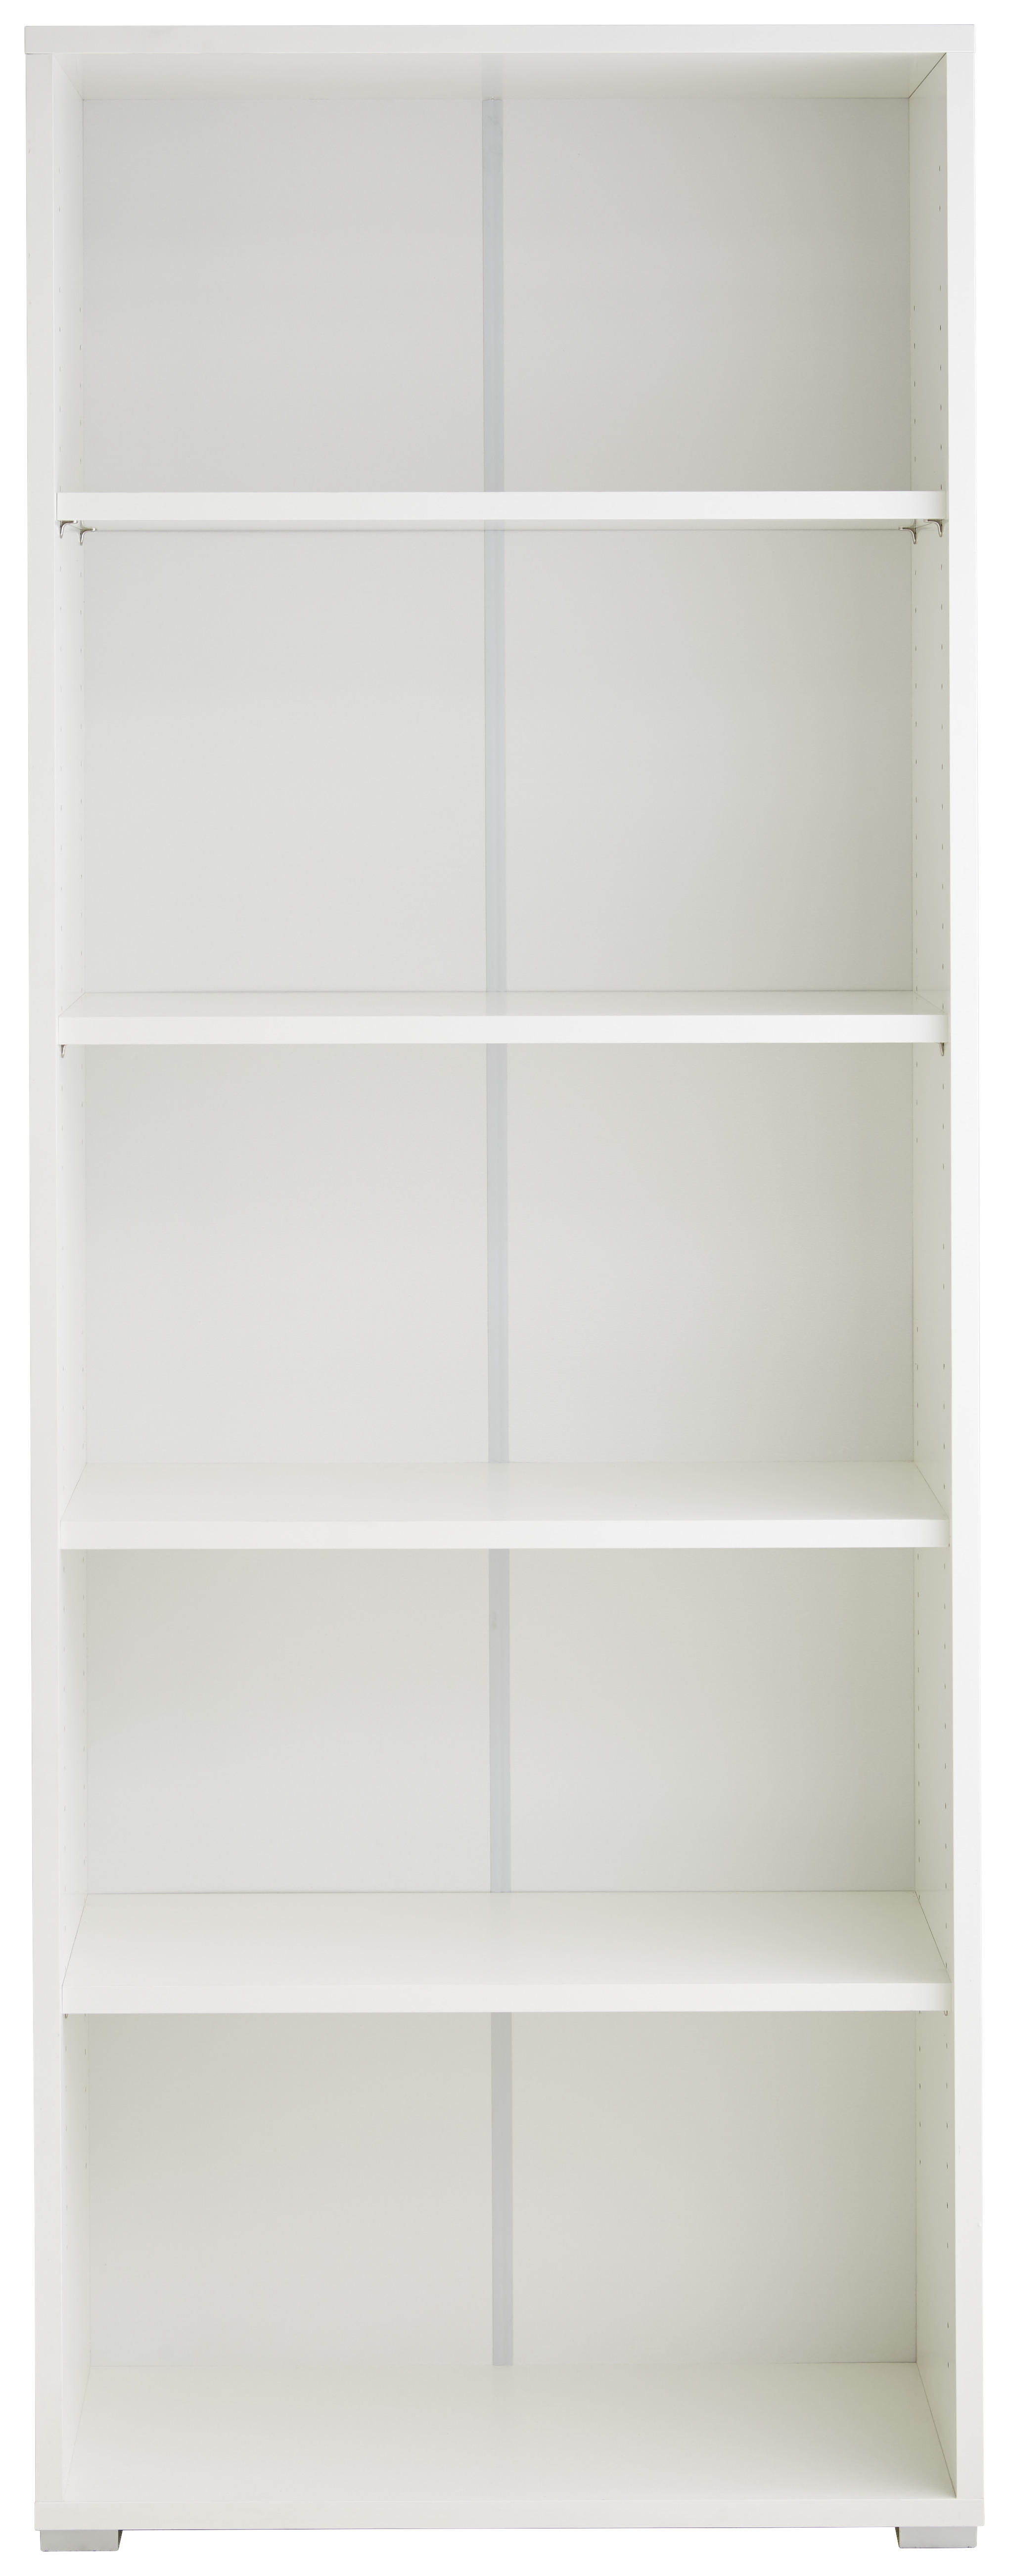 REGÁL, biela, 74,6/200/34 cm - biela/svetlosivá, Basics, kompozitné drevo (74,6/200/34cm) - Xora